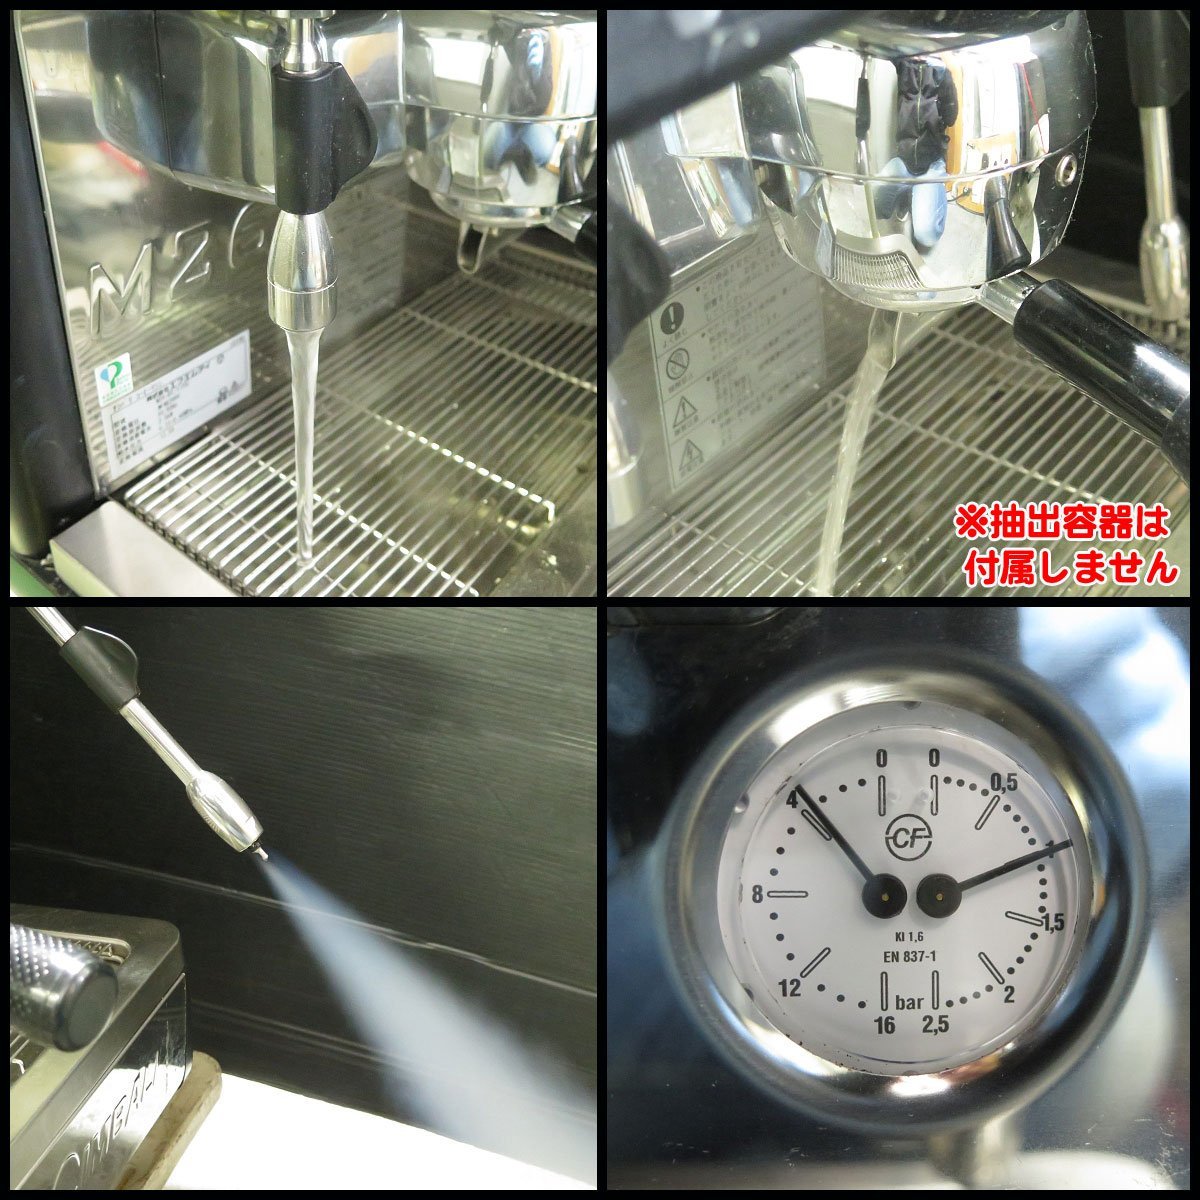 *2022 год производства! прекрасный товар! FMI Espresso кофе механизм LA CIMBALIla* подбородок шероховатость M26-DT/1(TS) турбо пар [ текущее состояние товар ] автомат эспрессо 